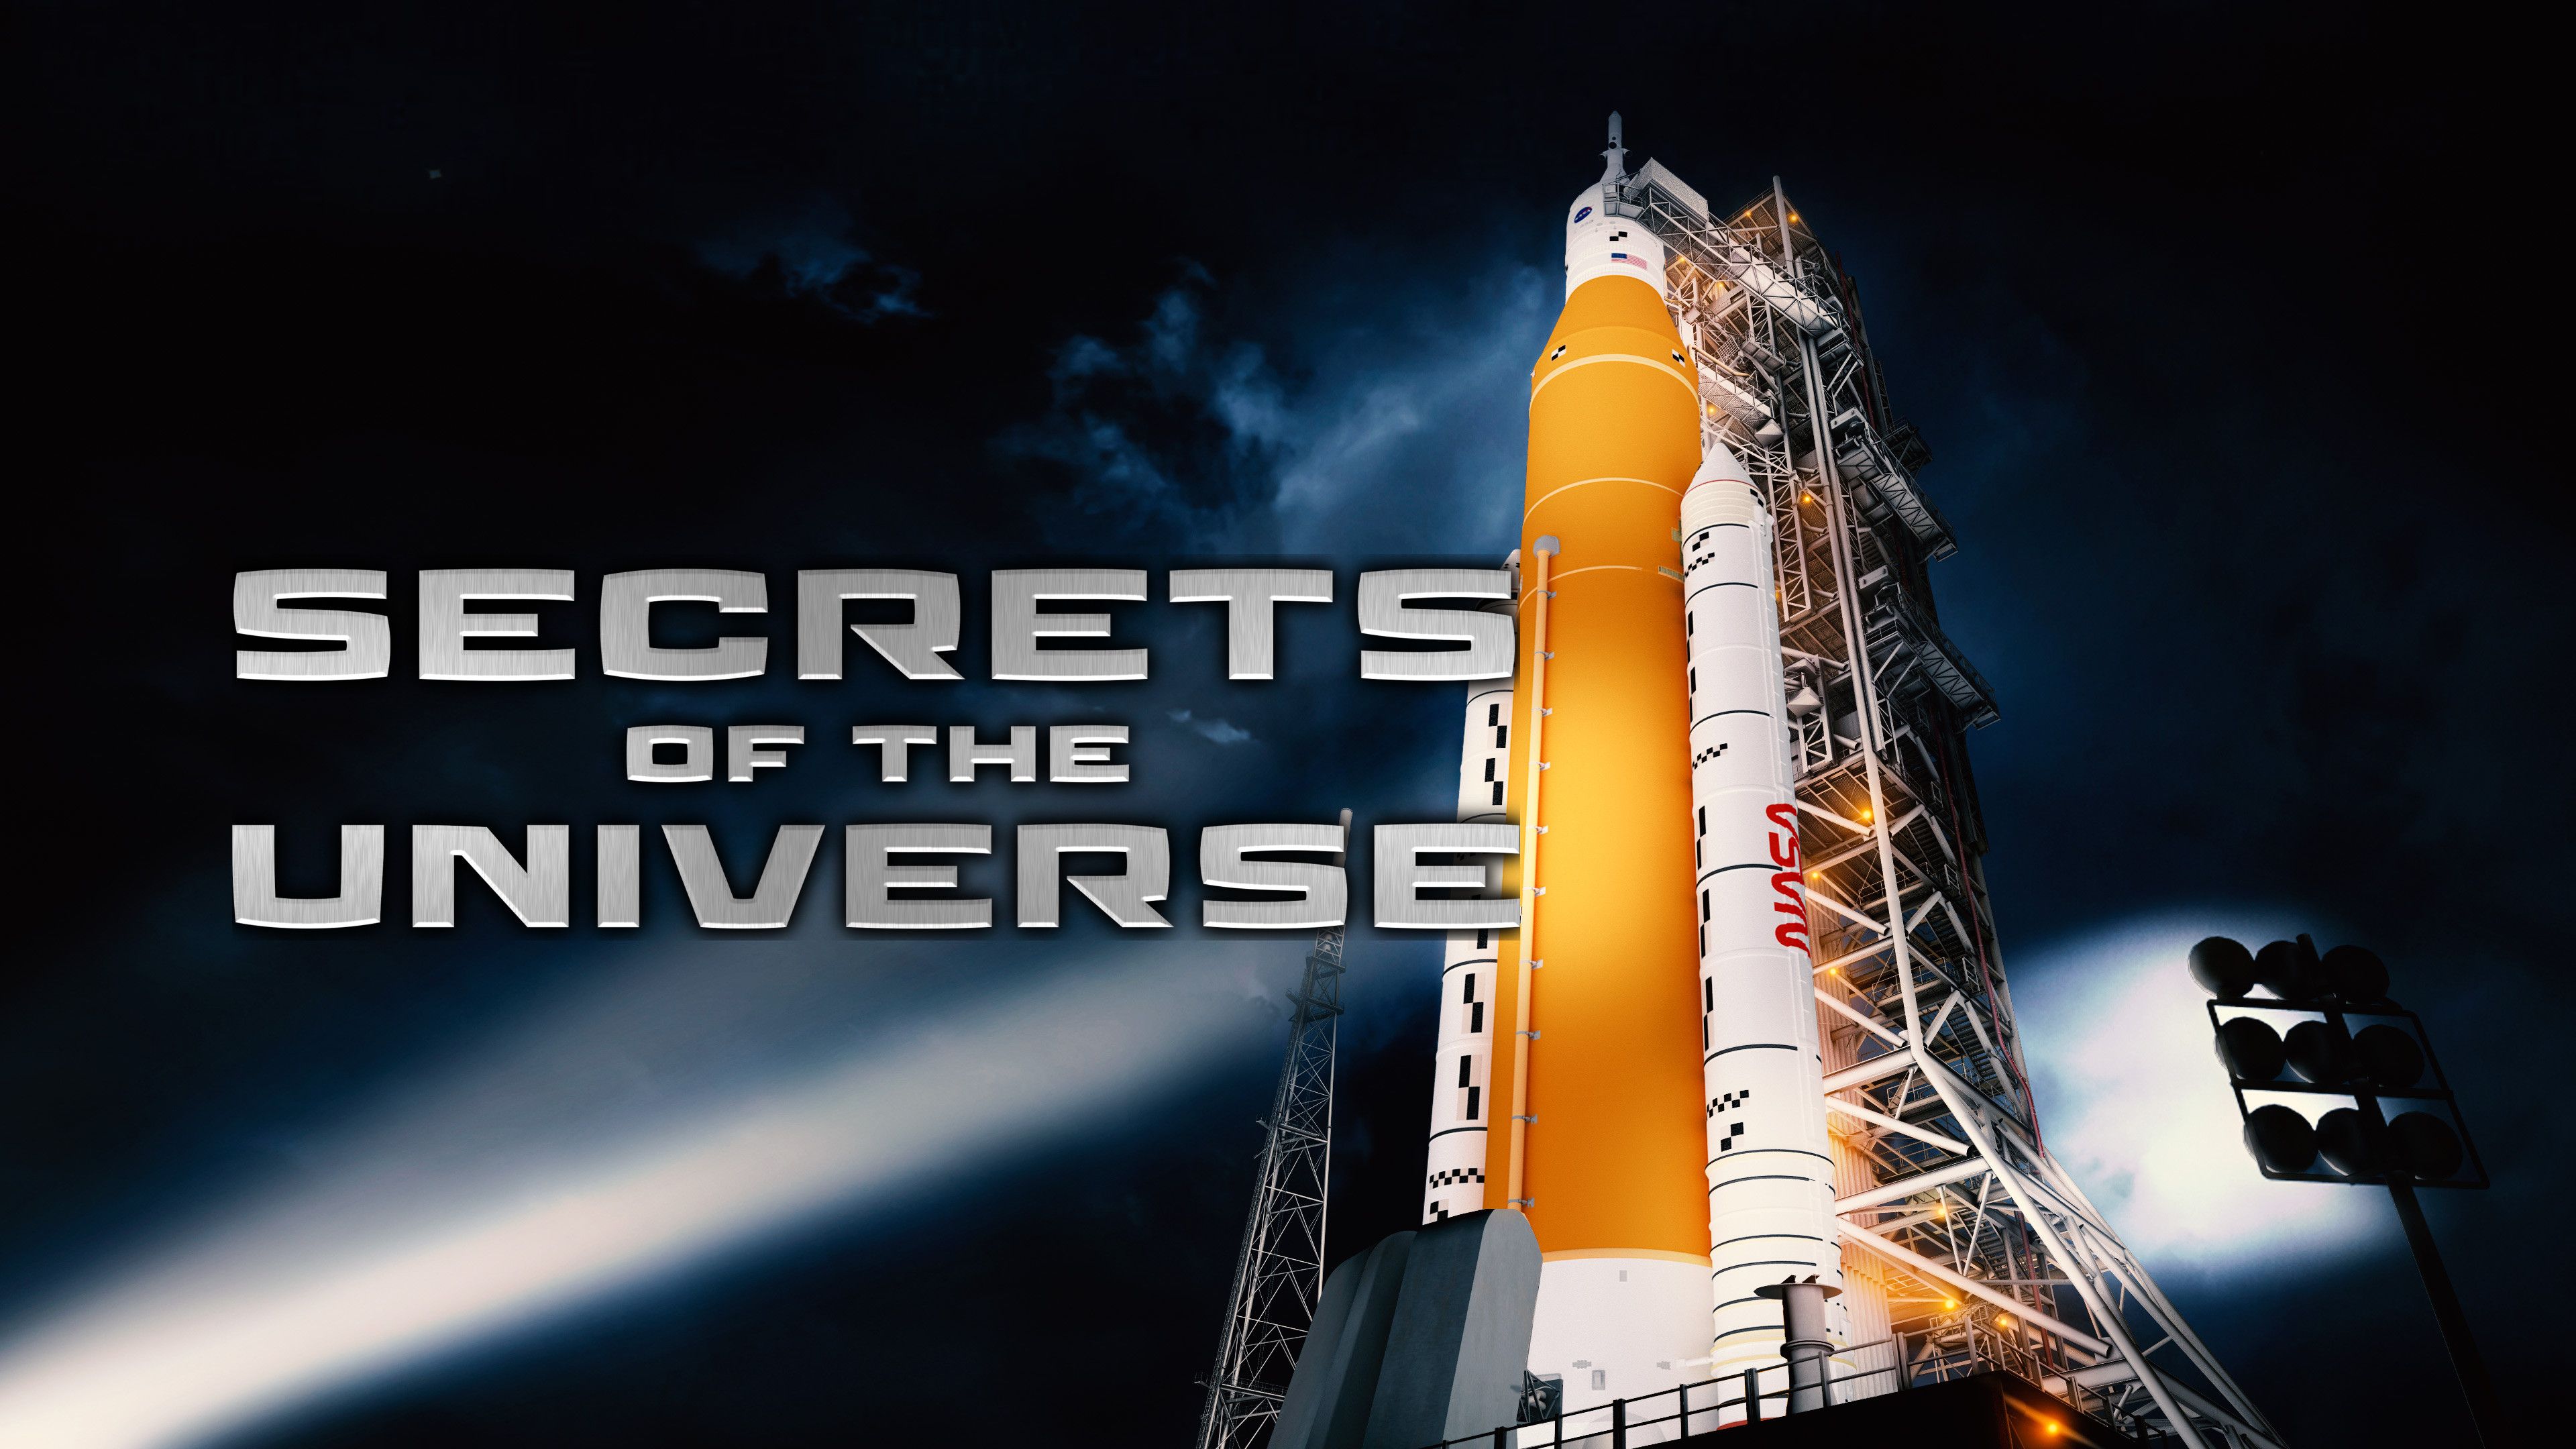 SLS: NASA's Mega Rocket